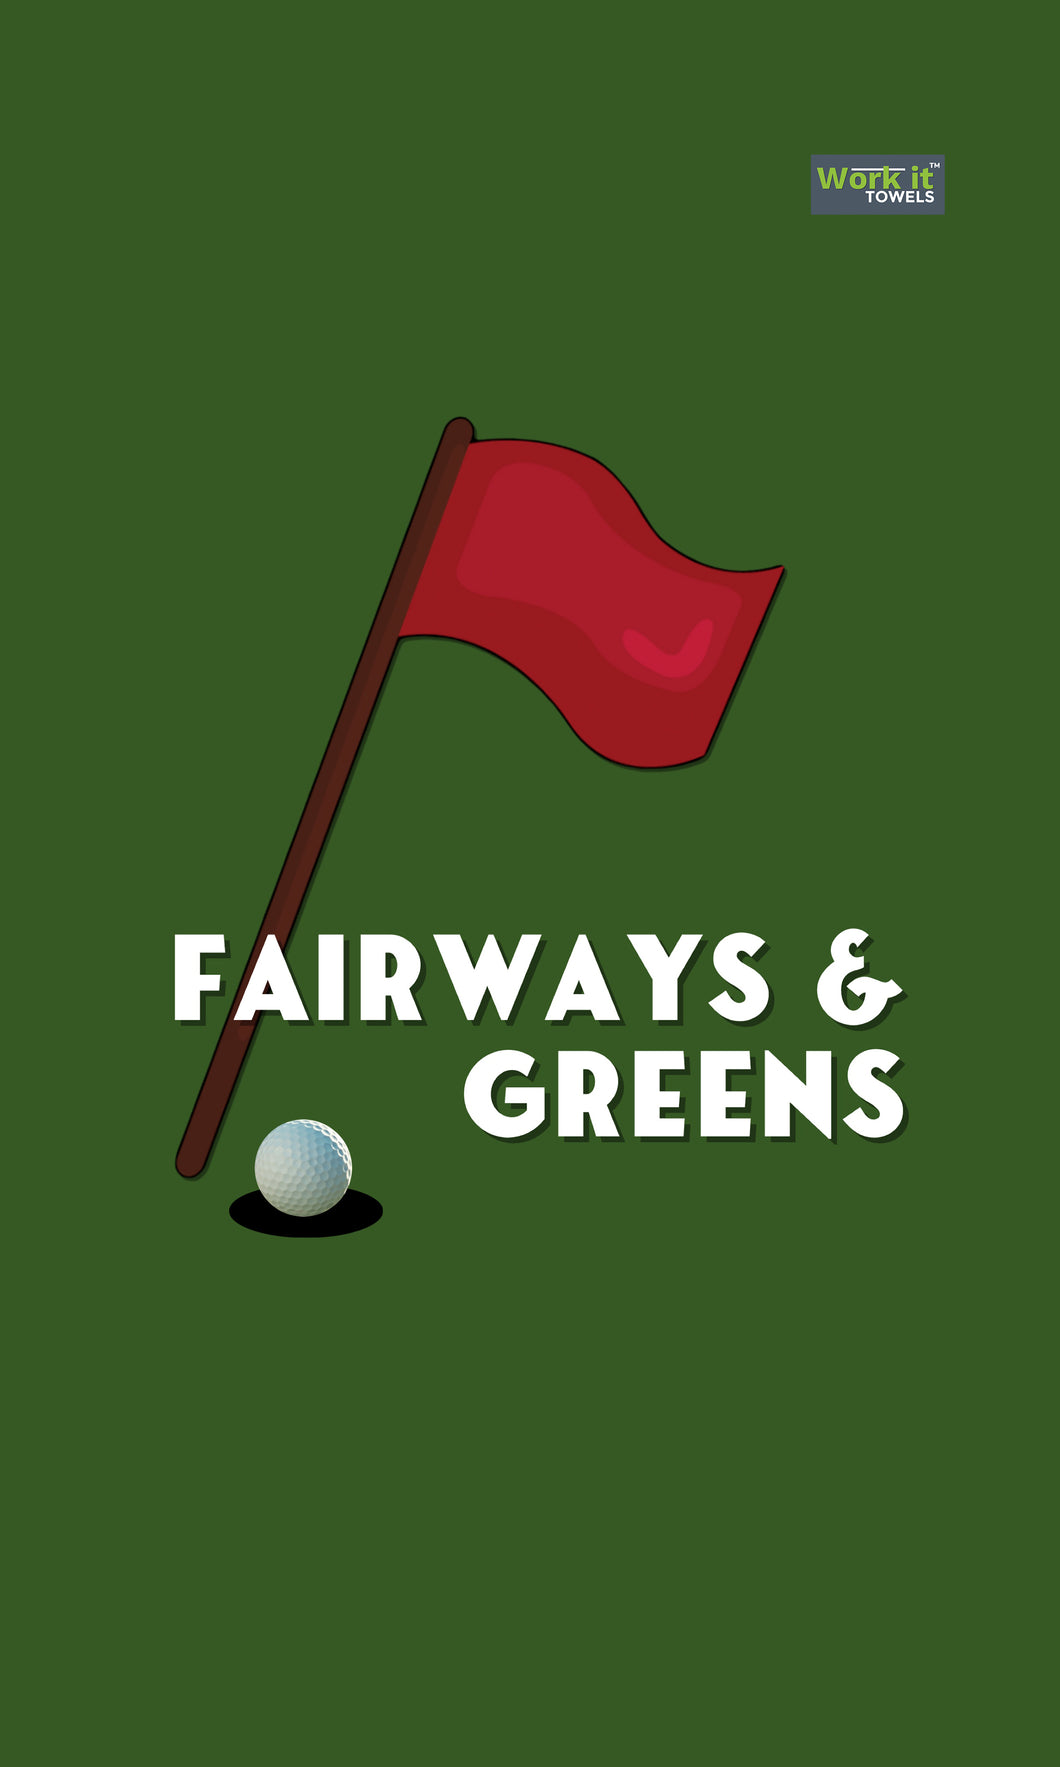 Fairways & Greens - work it towels